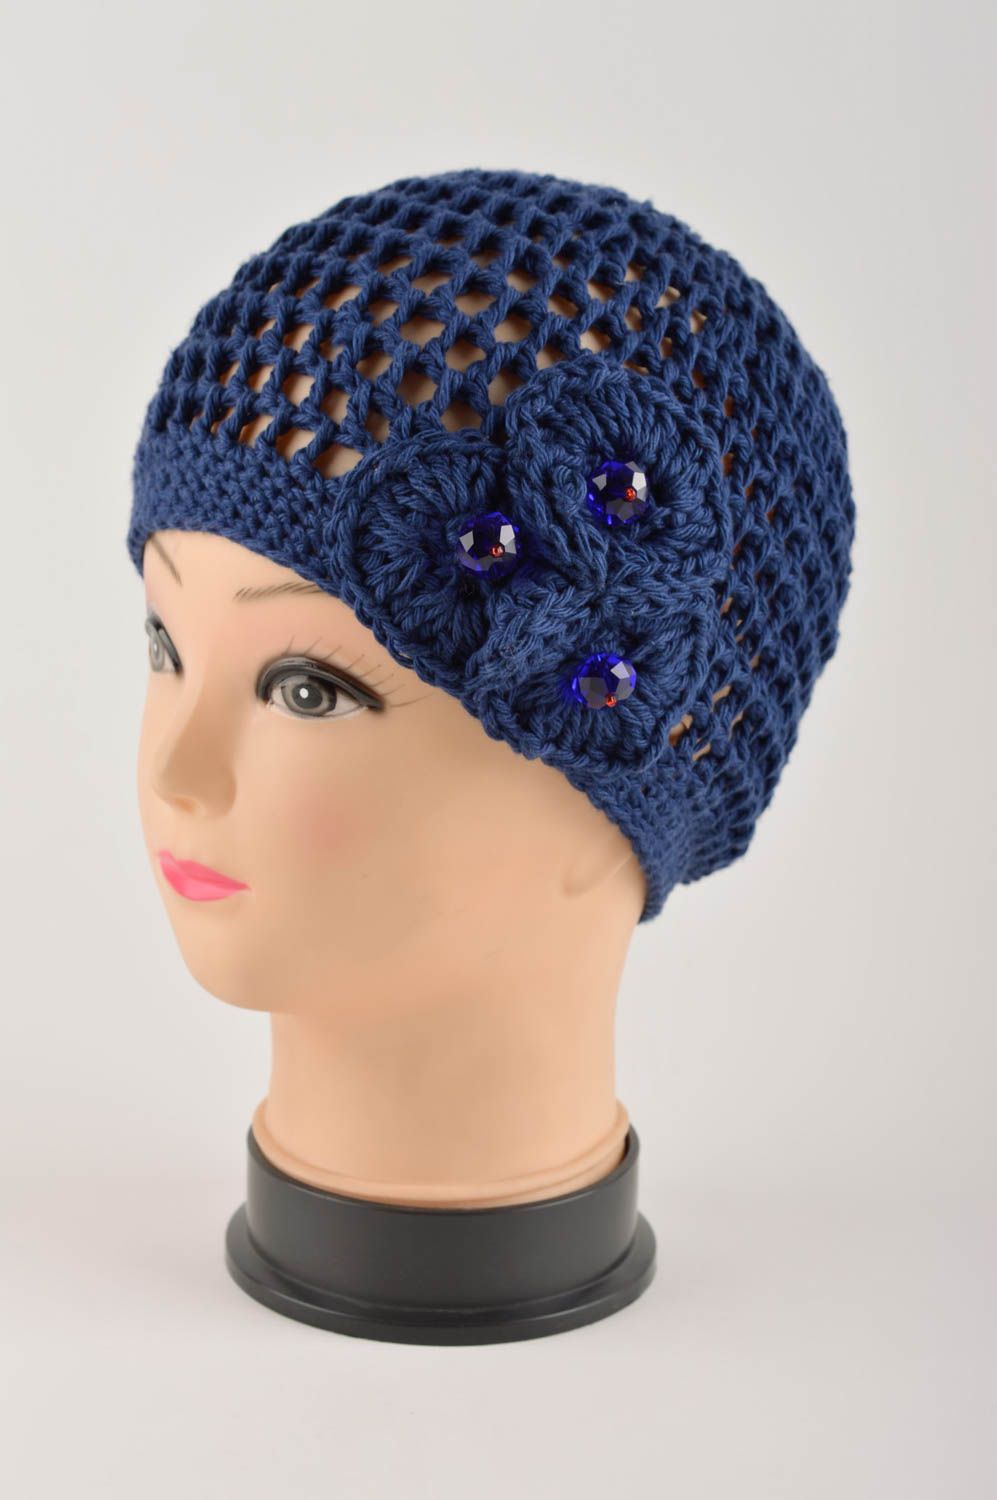 Вязаная шапка ручной работы женская шапка синяя красивая ажурная шапка с цветами фото 2